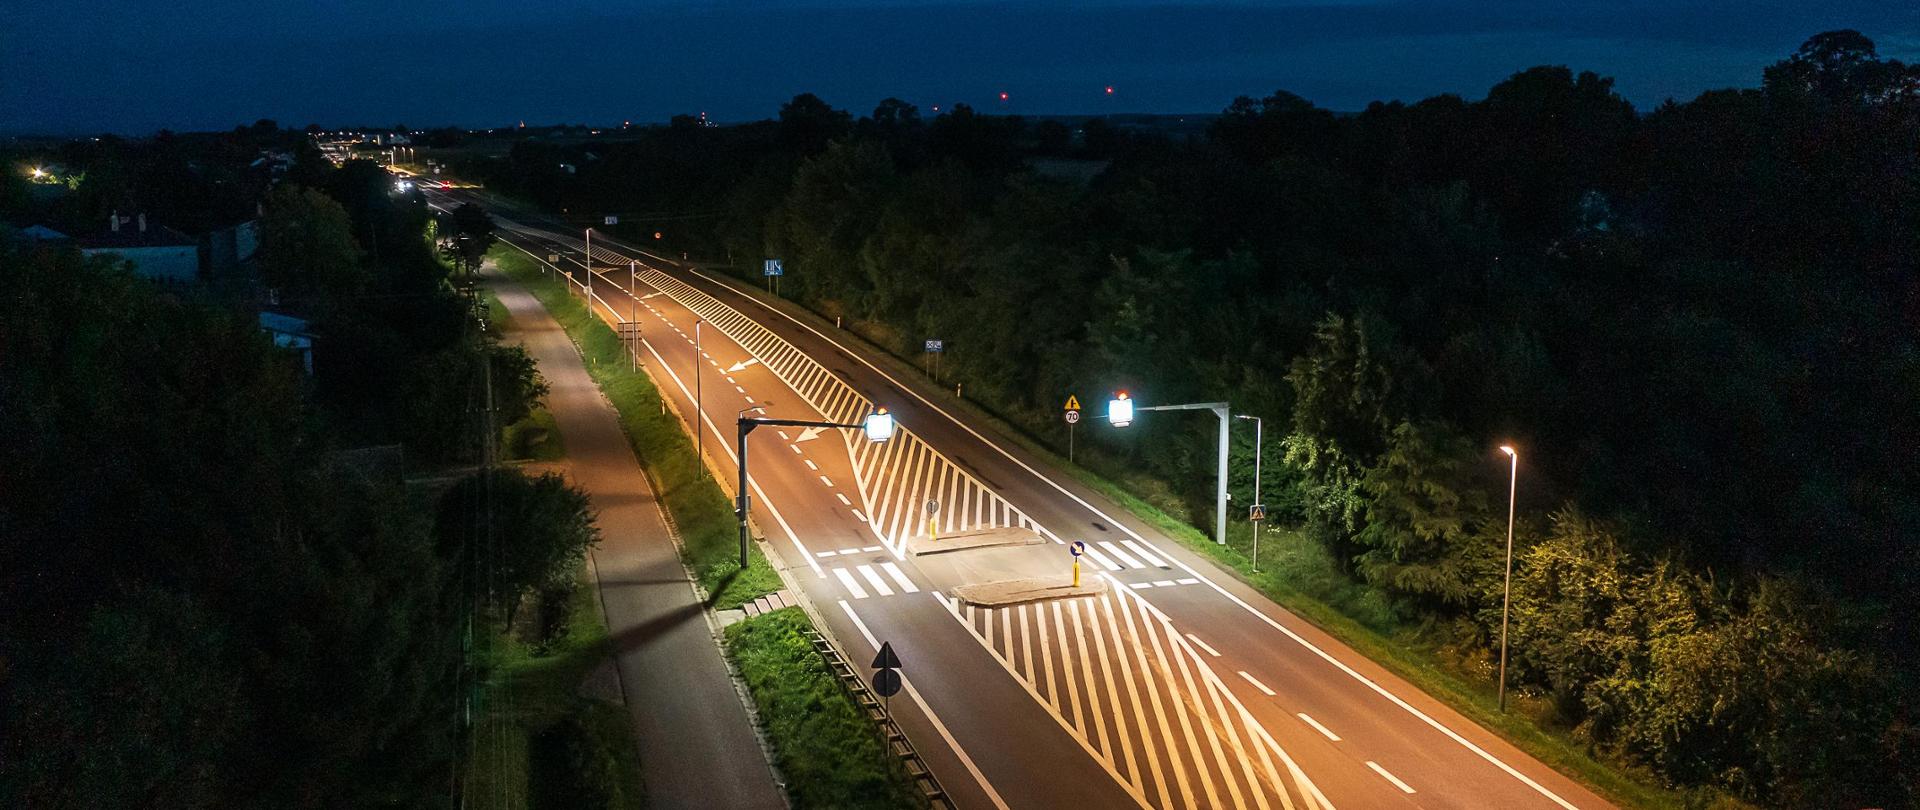 Widok w nocy drogi krajowej nr 77 w Zadąbrowiu i przejścia dla pieszych, które zostało doświetlone